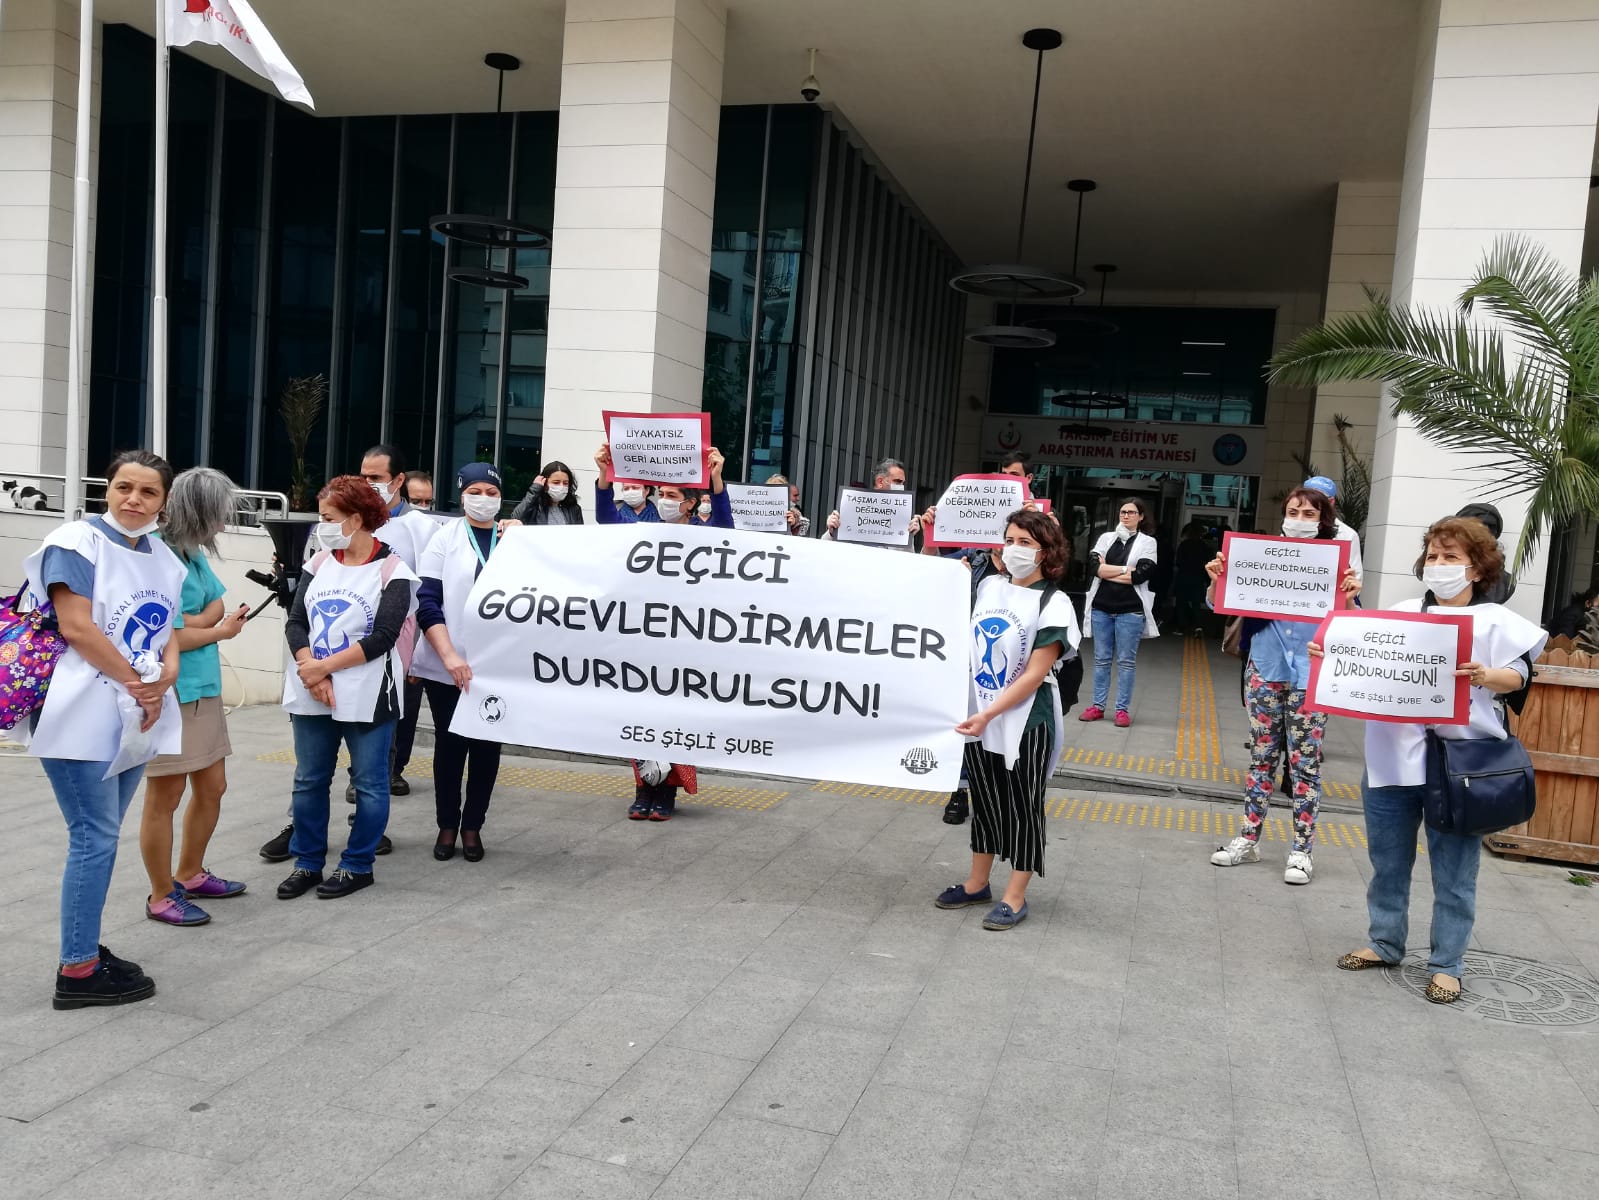 İstanbul Şişli Şubemiz: Geçici Görevlendirmeler Durdurulsun